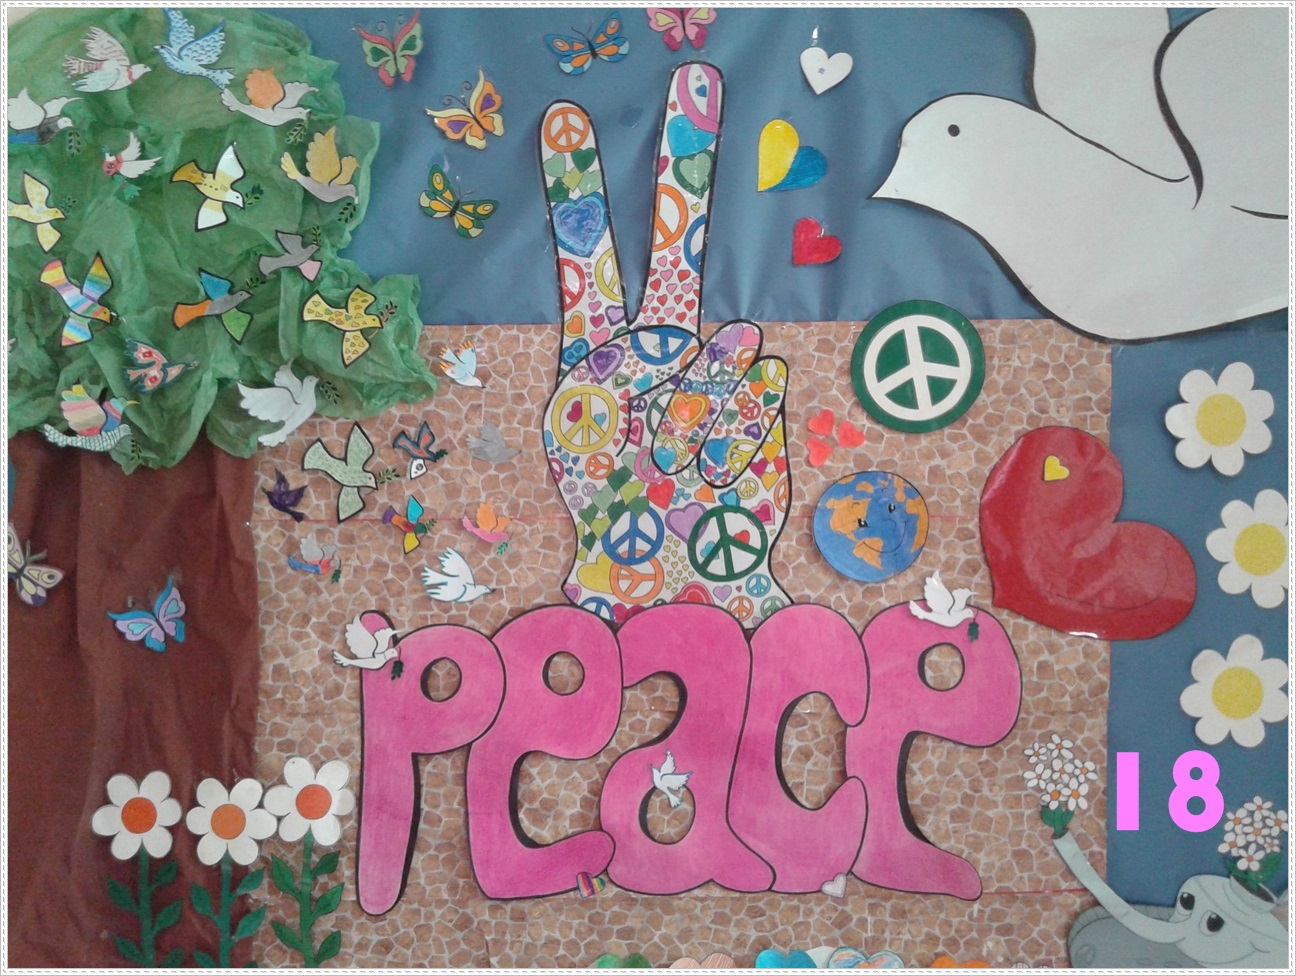 Día de la Paz ene 18